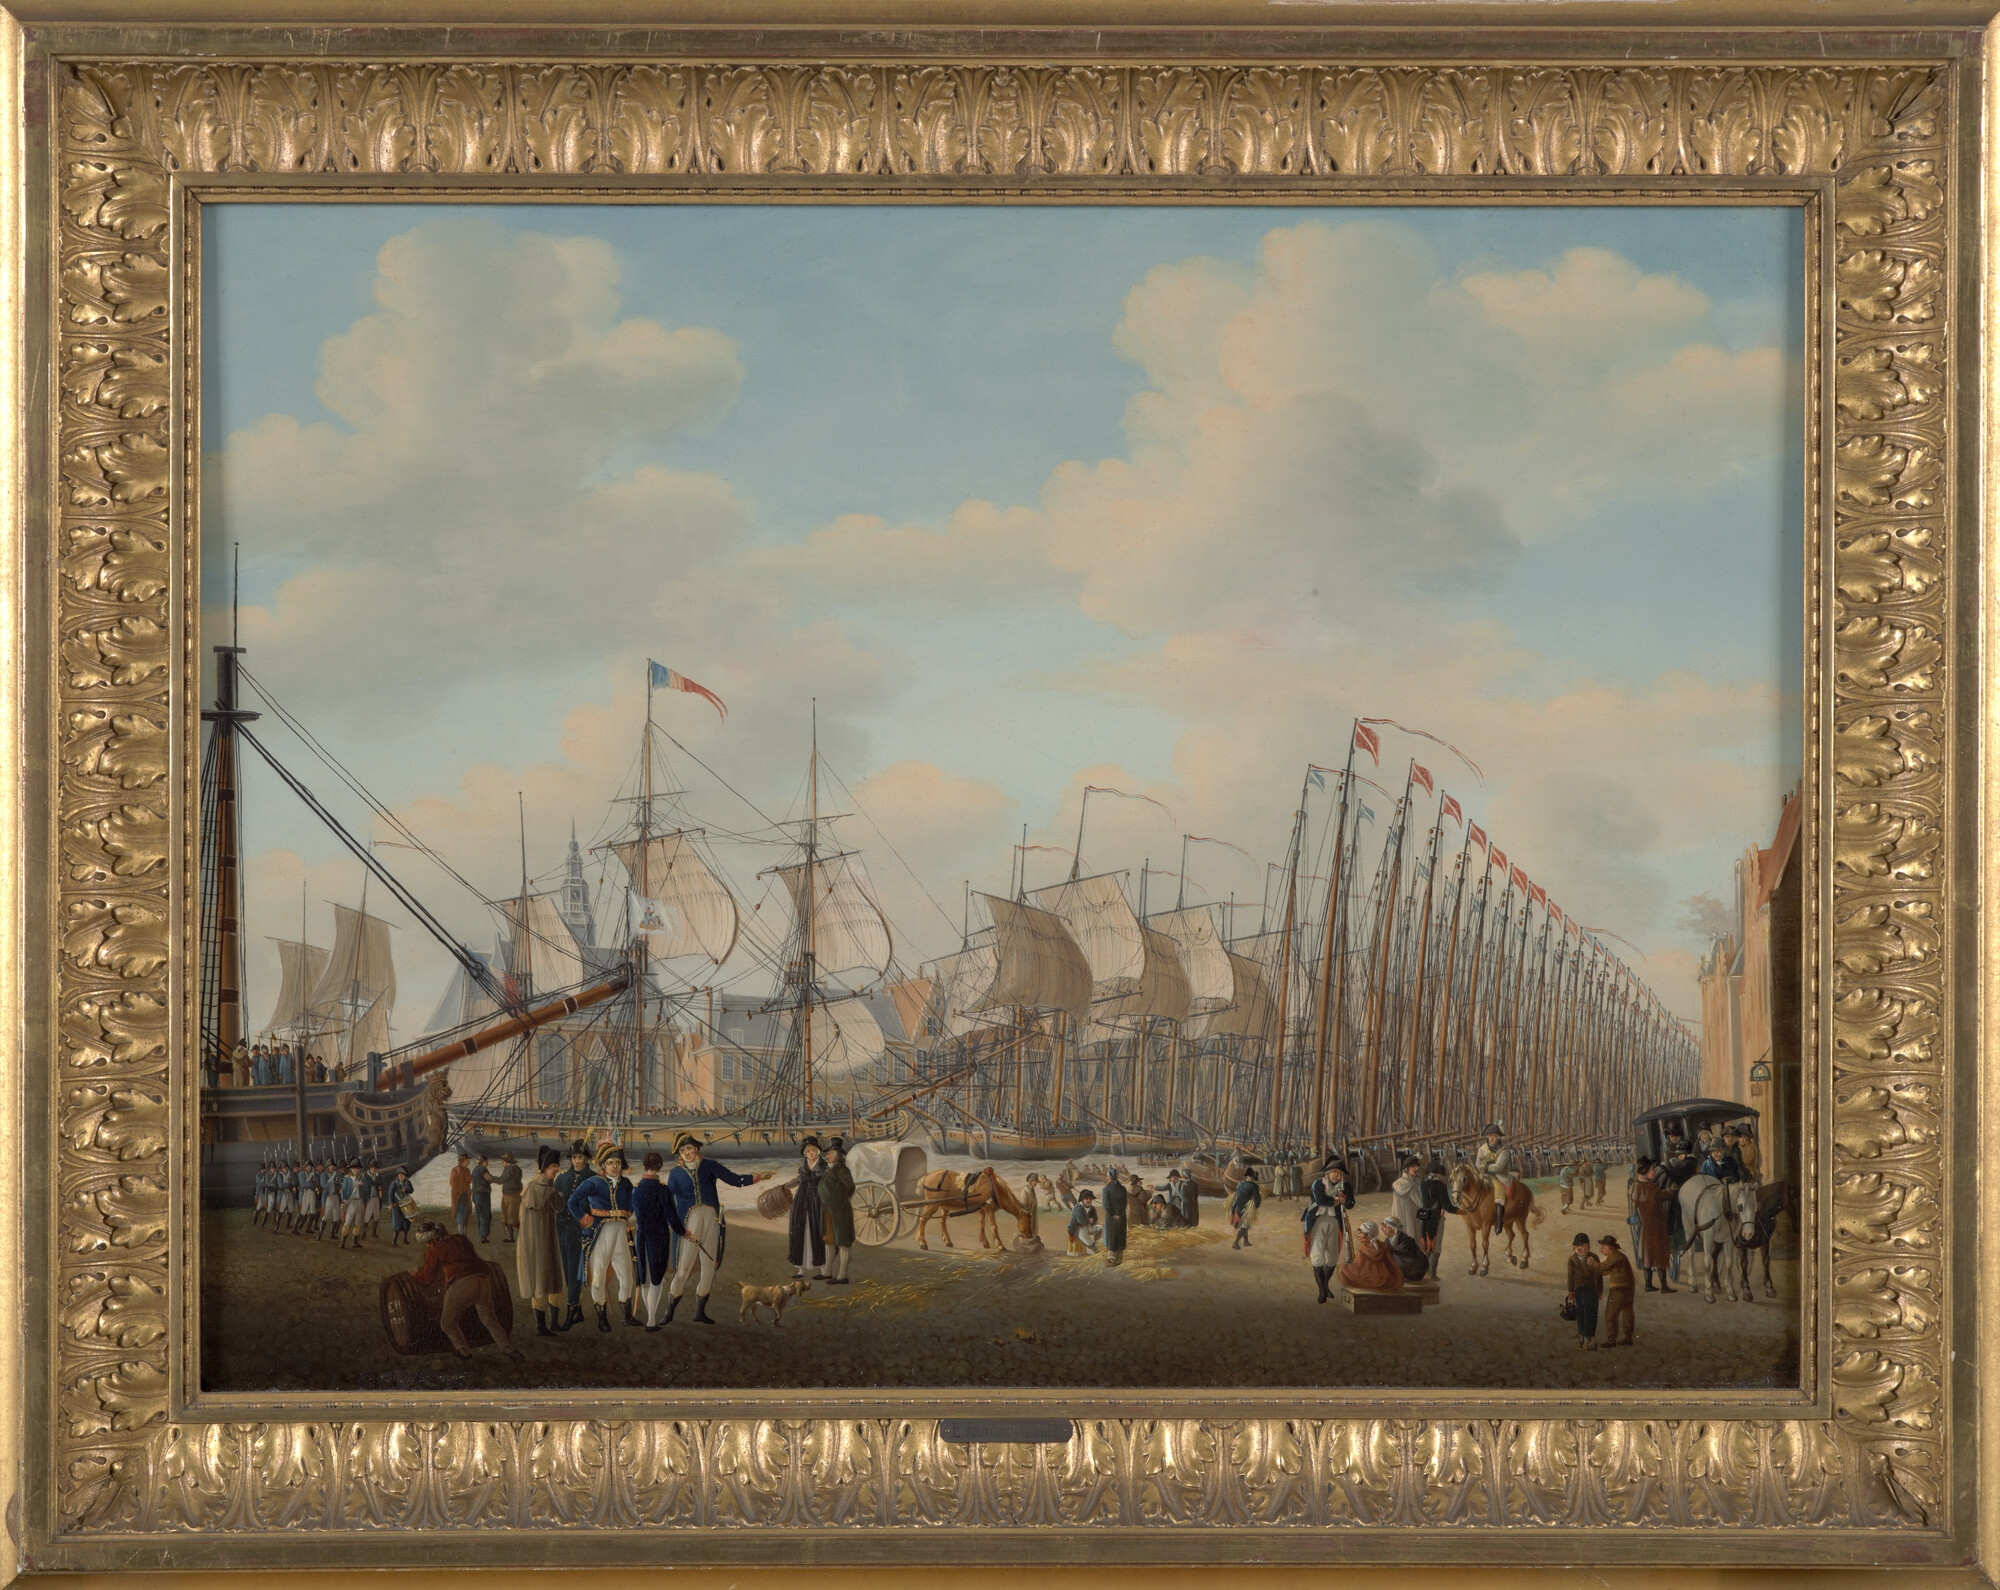 A.0074(02); De Secrete Macht in de haven van Vlissingen; schilderij